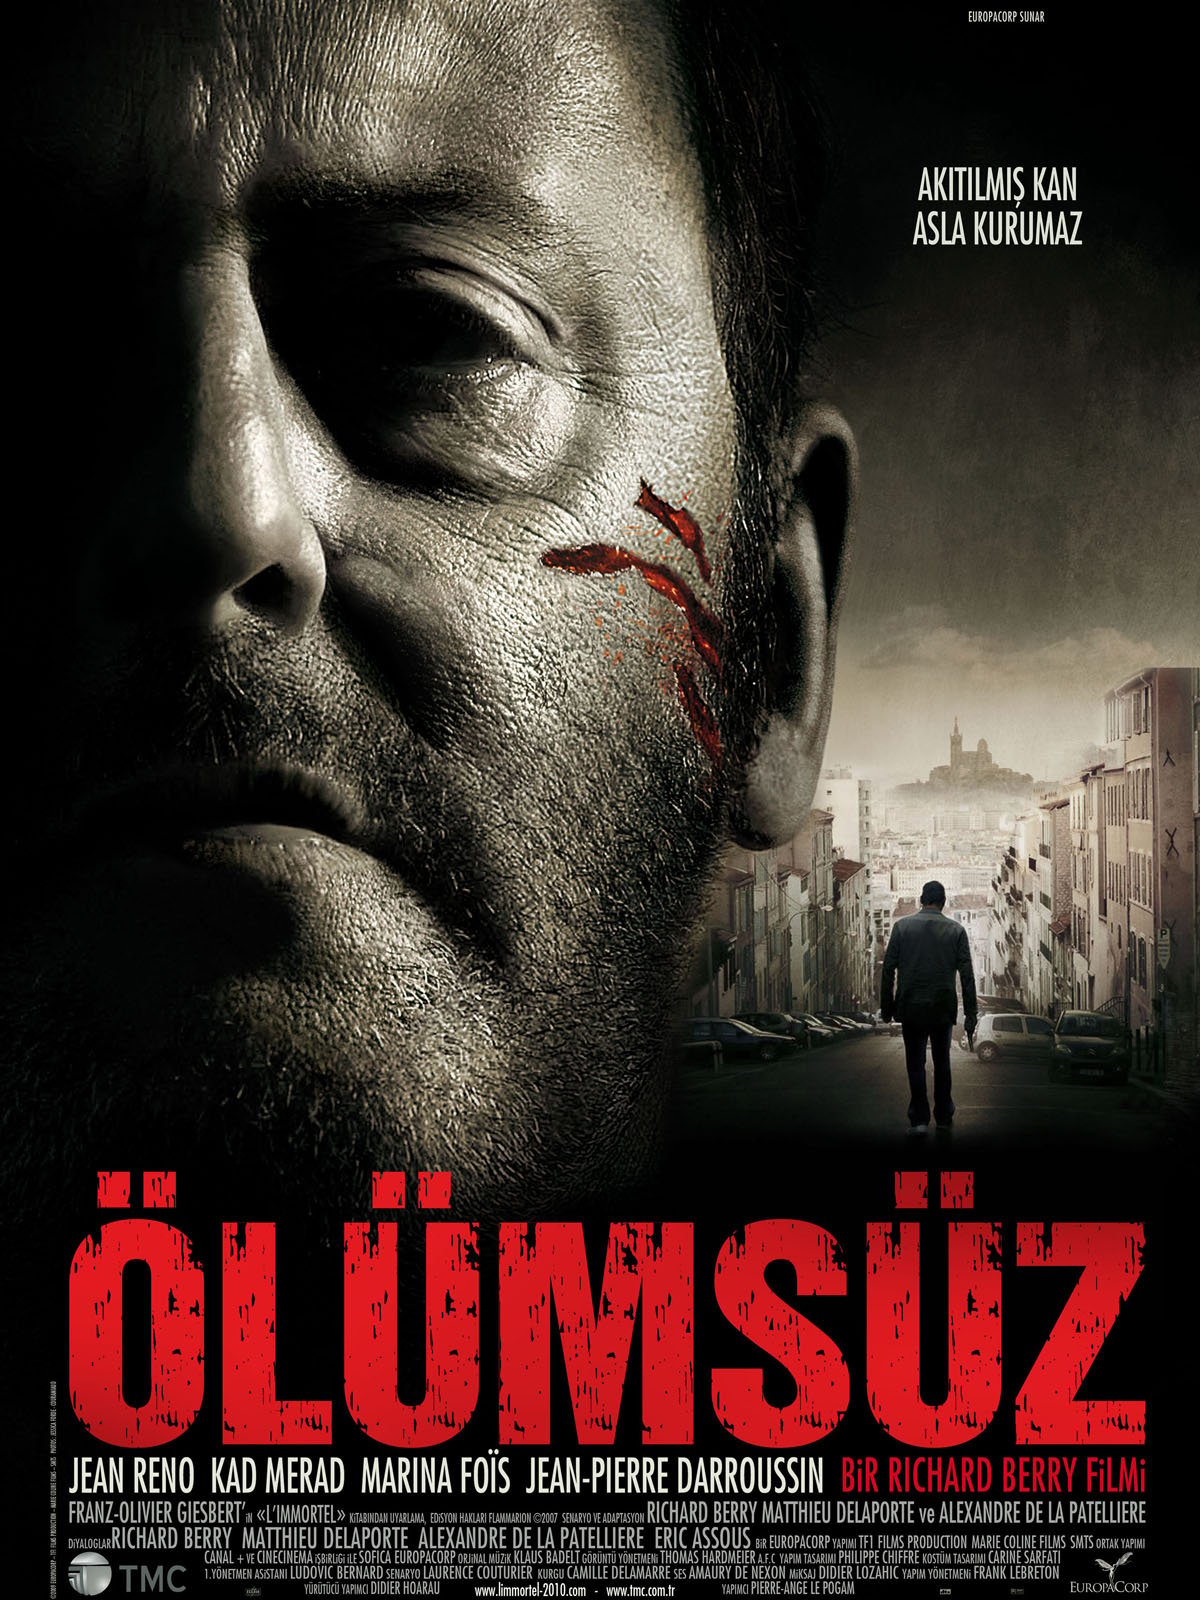 22 Bullets (2010) 448Kbps 24Fps 48Khz 5.1Ch DVD Turkish Audio TAC